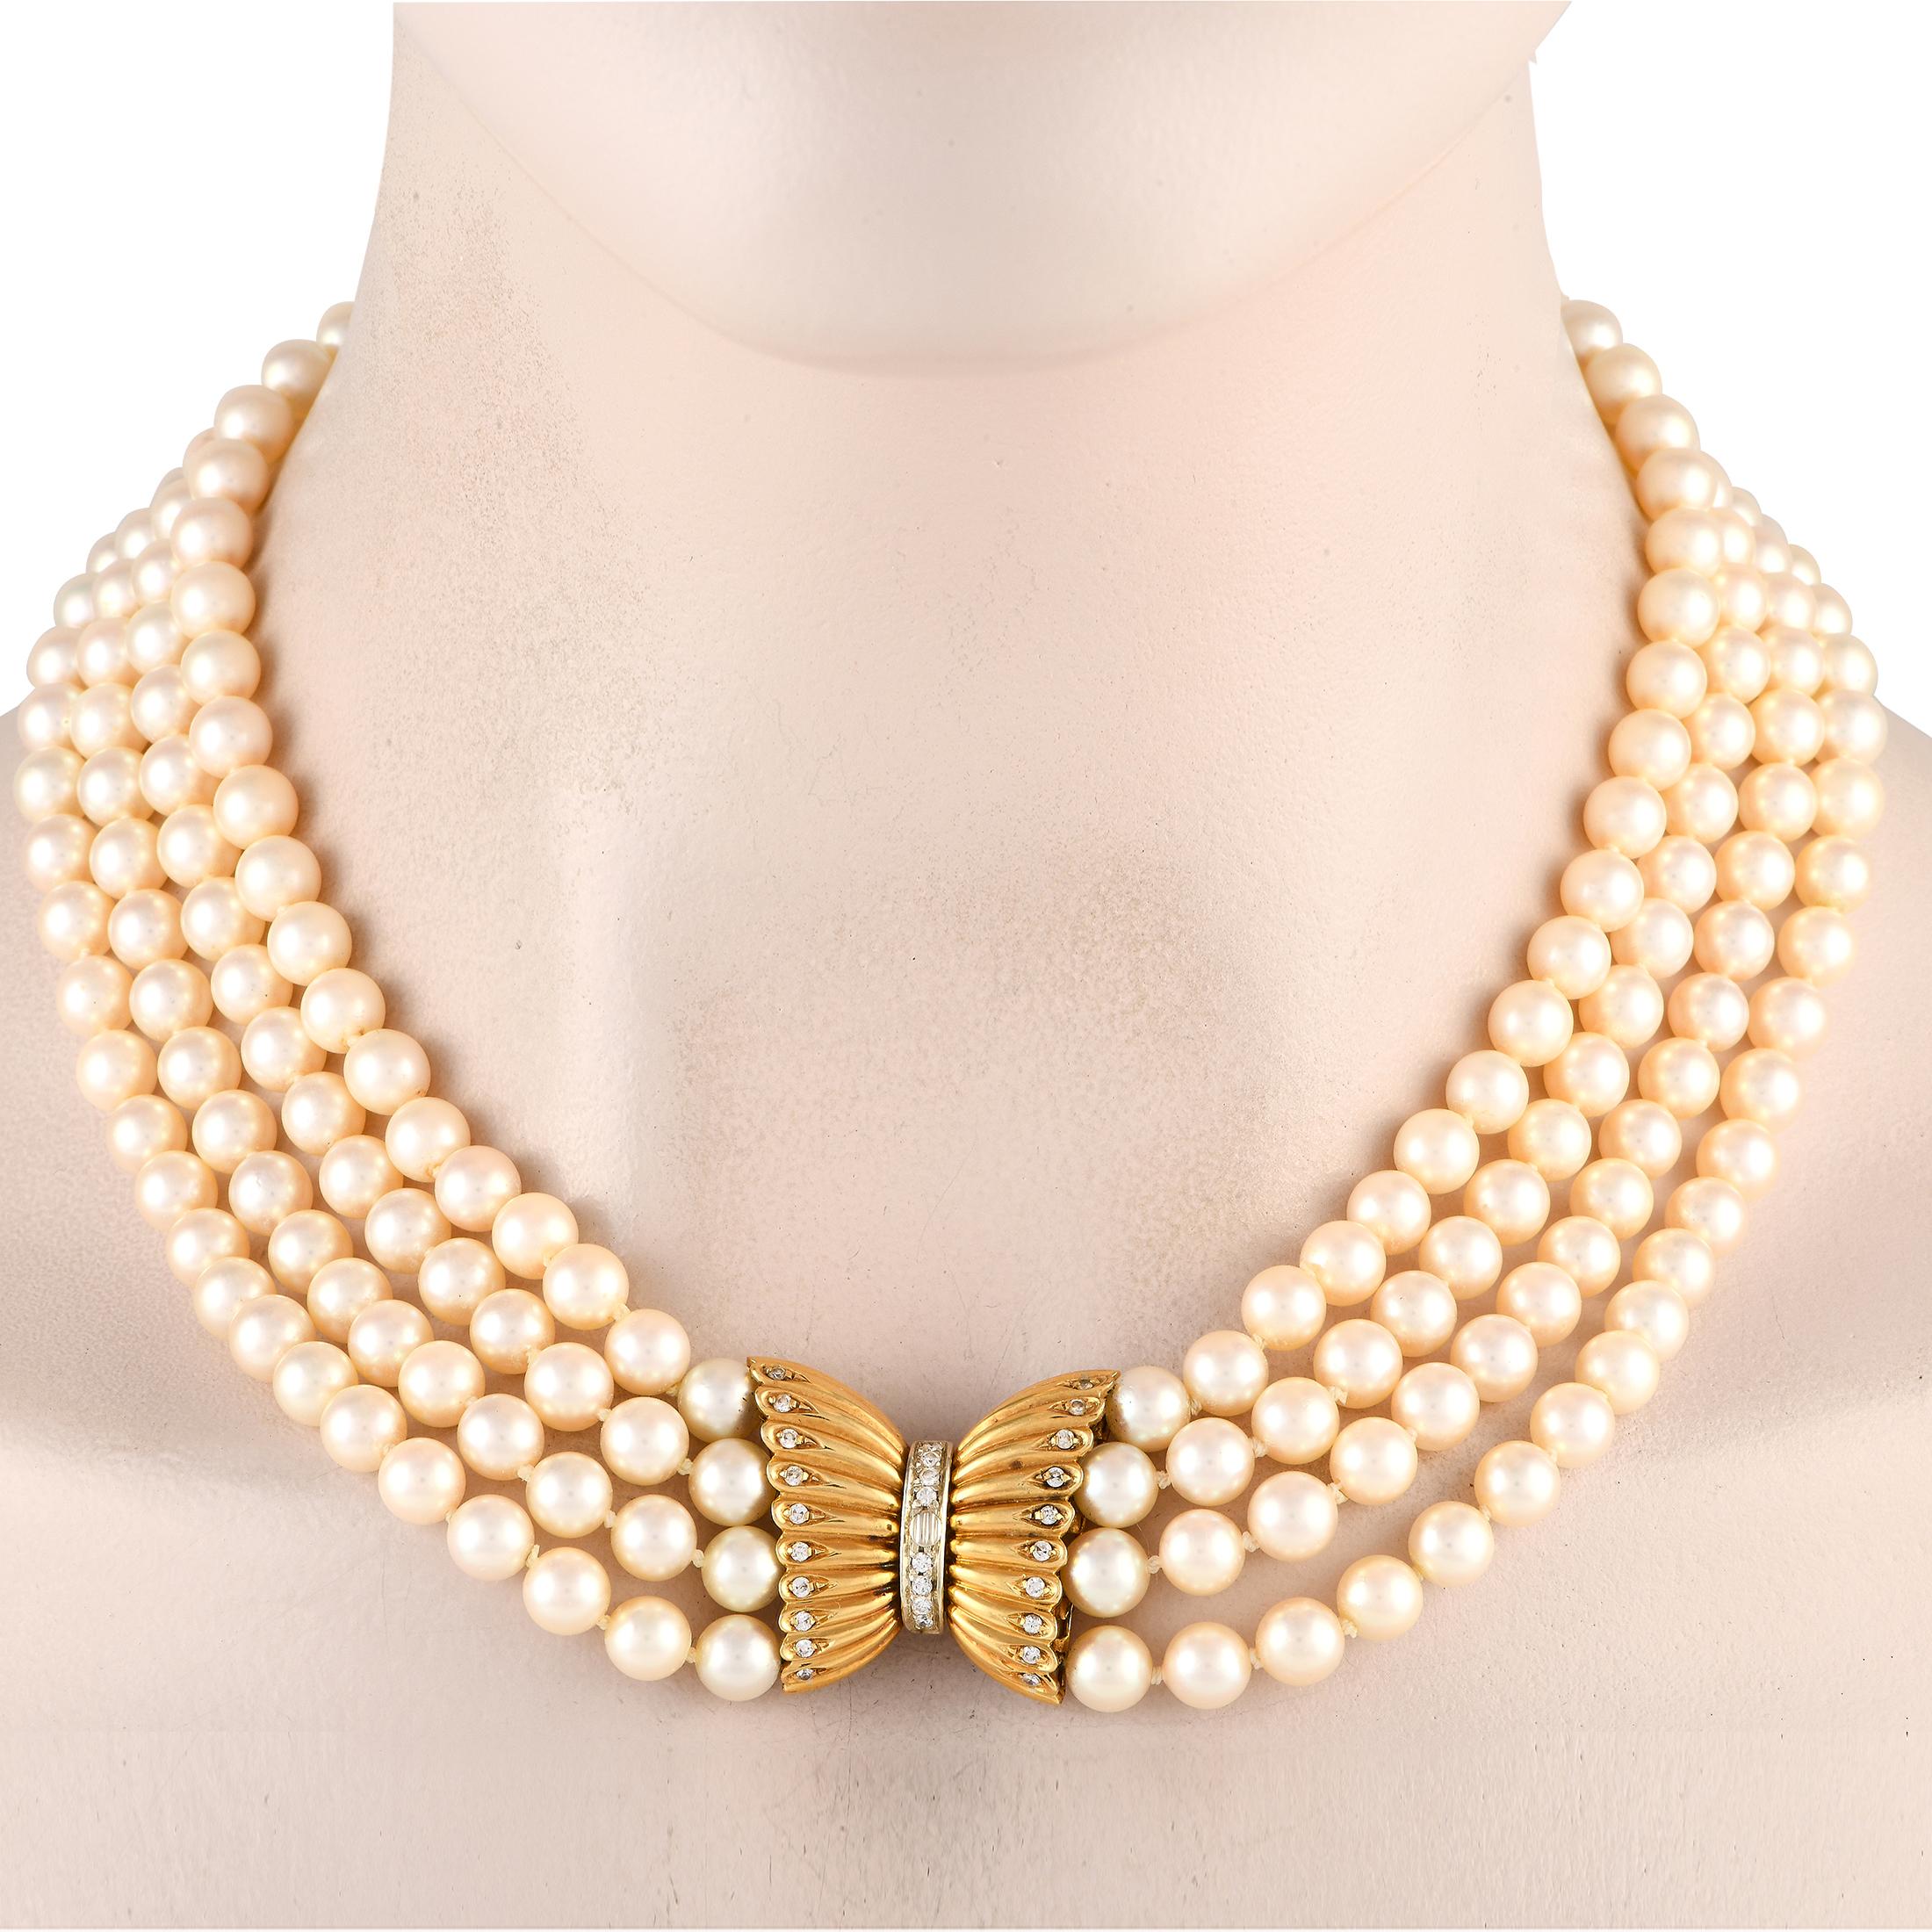 Il est impossible de ne pas remarquer l'éclat magnifique de ce collier. Ce fabuleux collier comporte quatre rangs de perles de 7,5 mm et se termine par un fermoir en forme de boîte avec un nœud en or jaune 18 carats orné de diamants.Proposé dans un